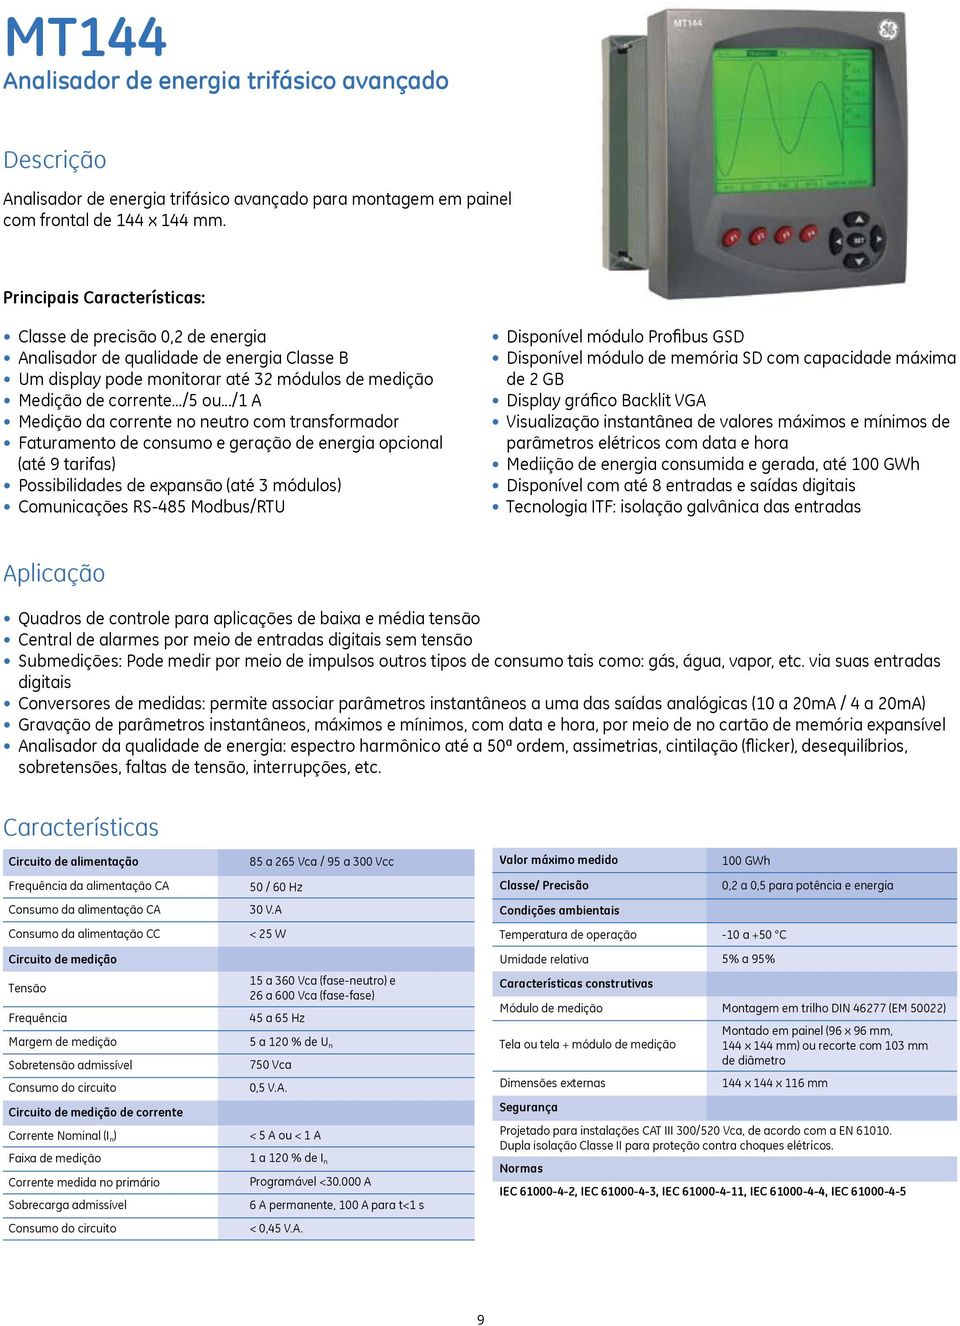 ../1 A Medição da corrente no neutro com transformador Faturamento de consumo e geração de energia opcional (até 9 tarifas) Possibilidades de expansão (até 3 módulos) Comunicações RS-485 Modbus/RTU